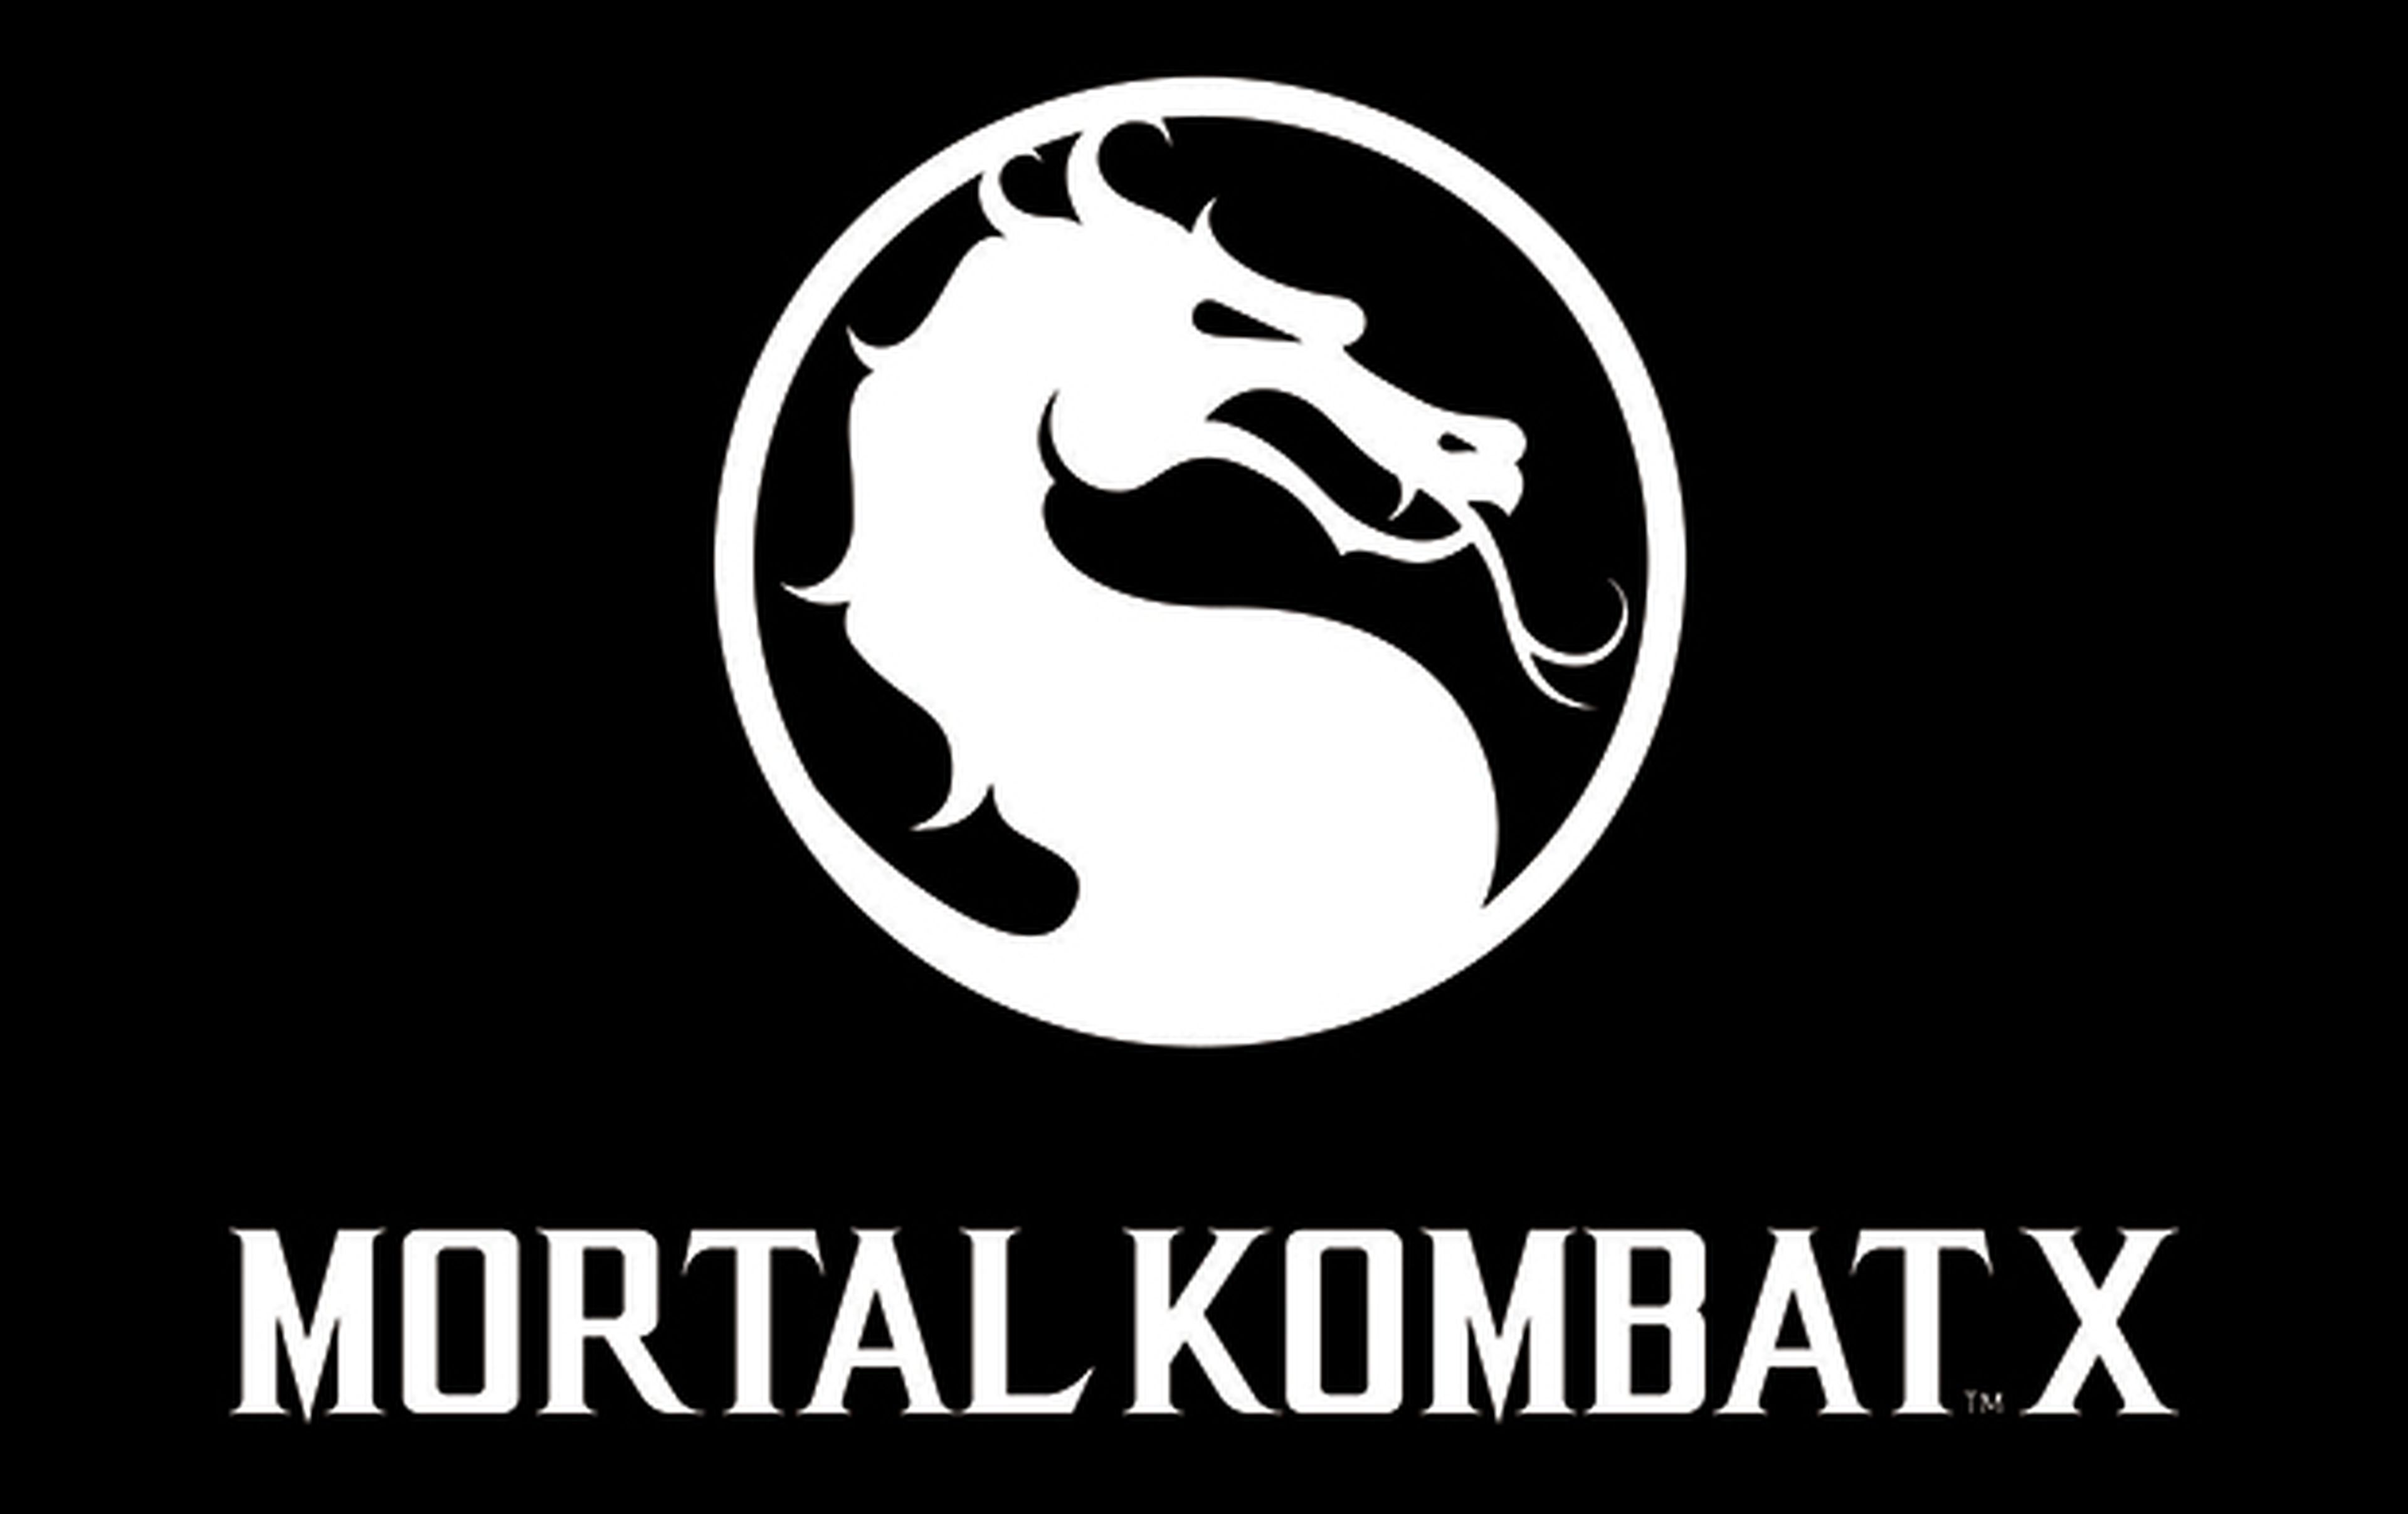 ¿Quiénes serán los próximos personajes de Mortal Kombat X?